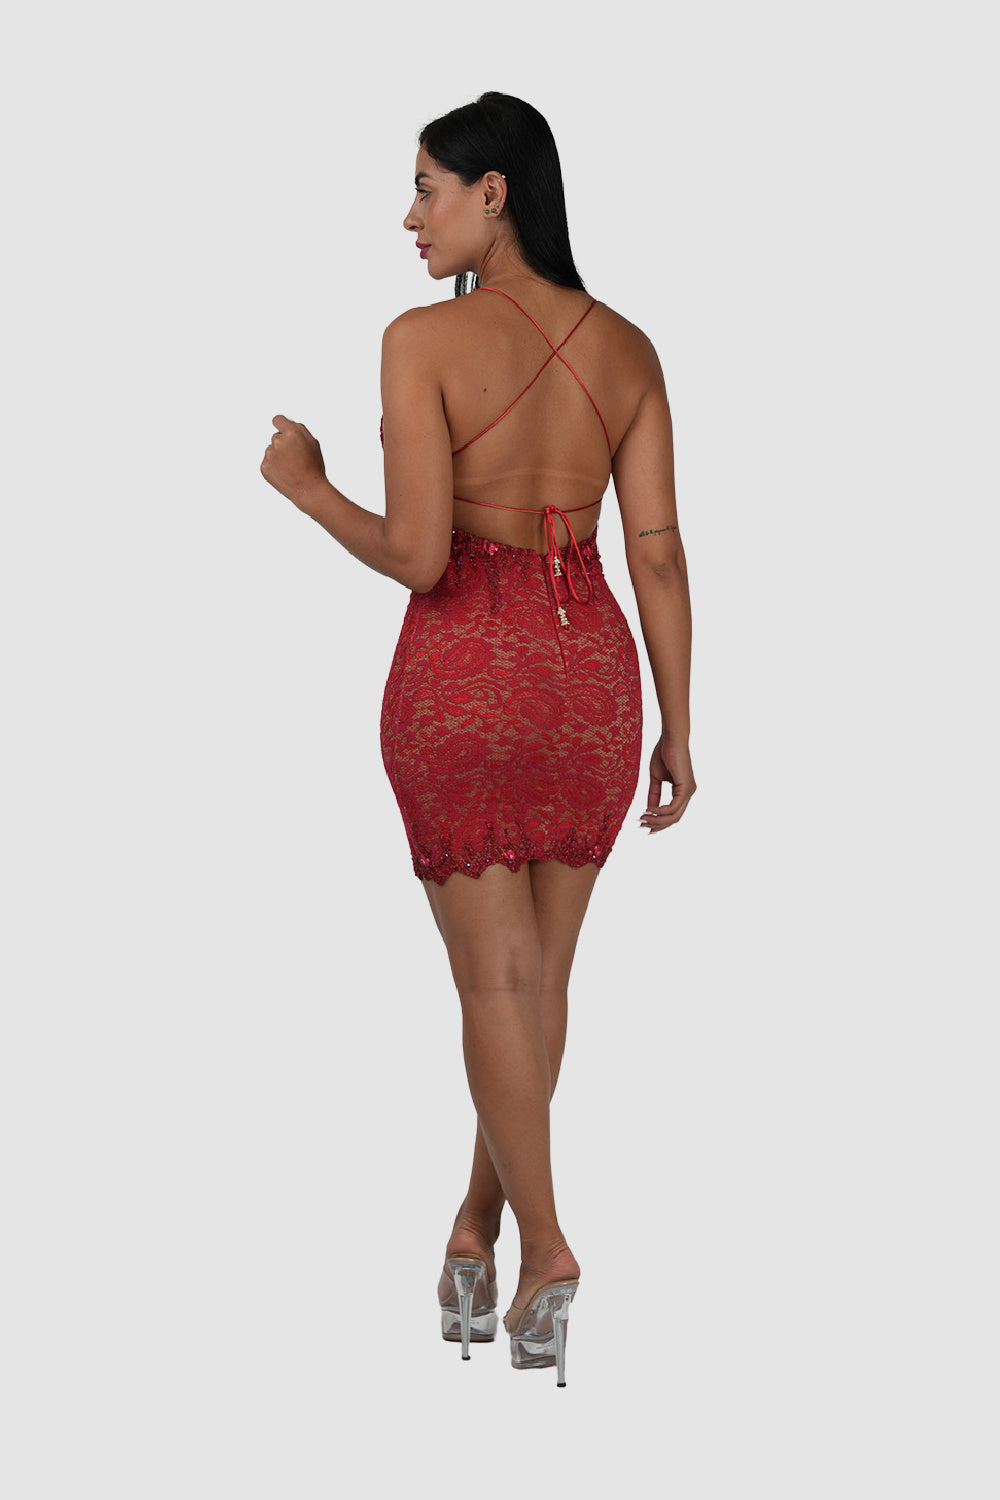 Baccio Premium Red Red Dress Short